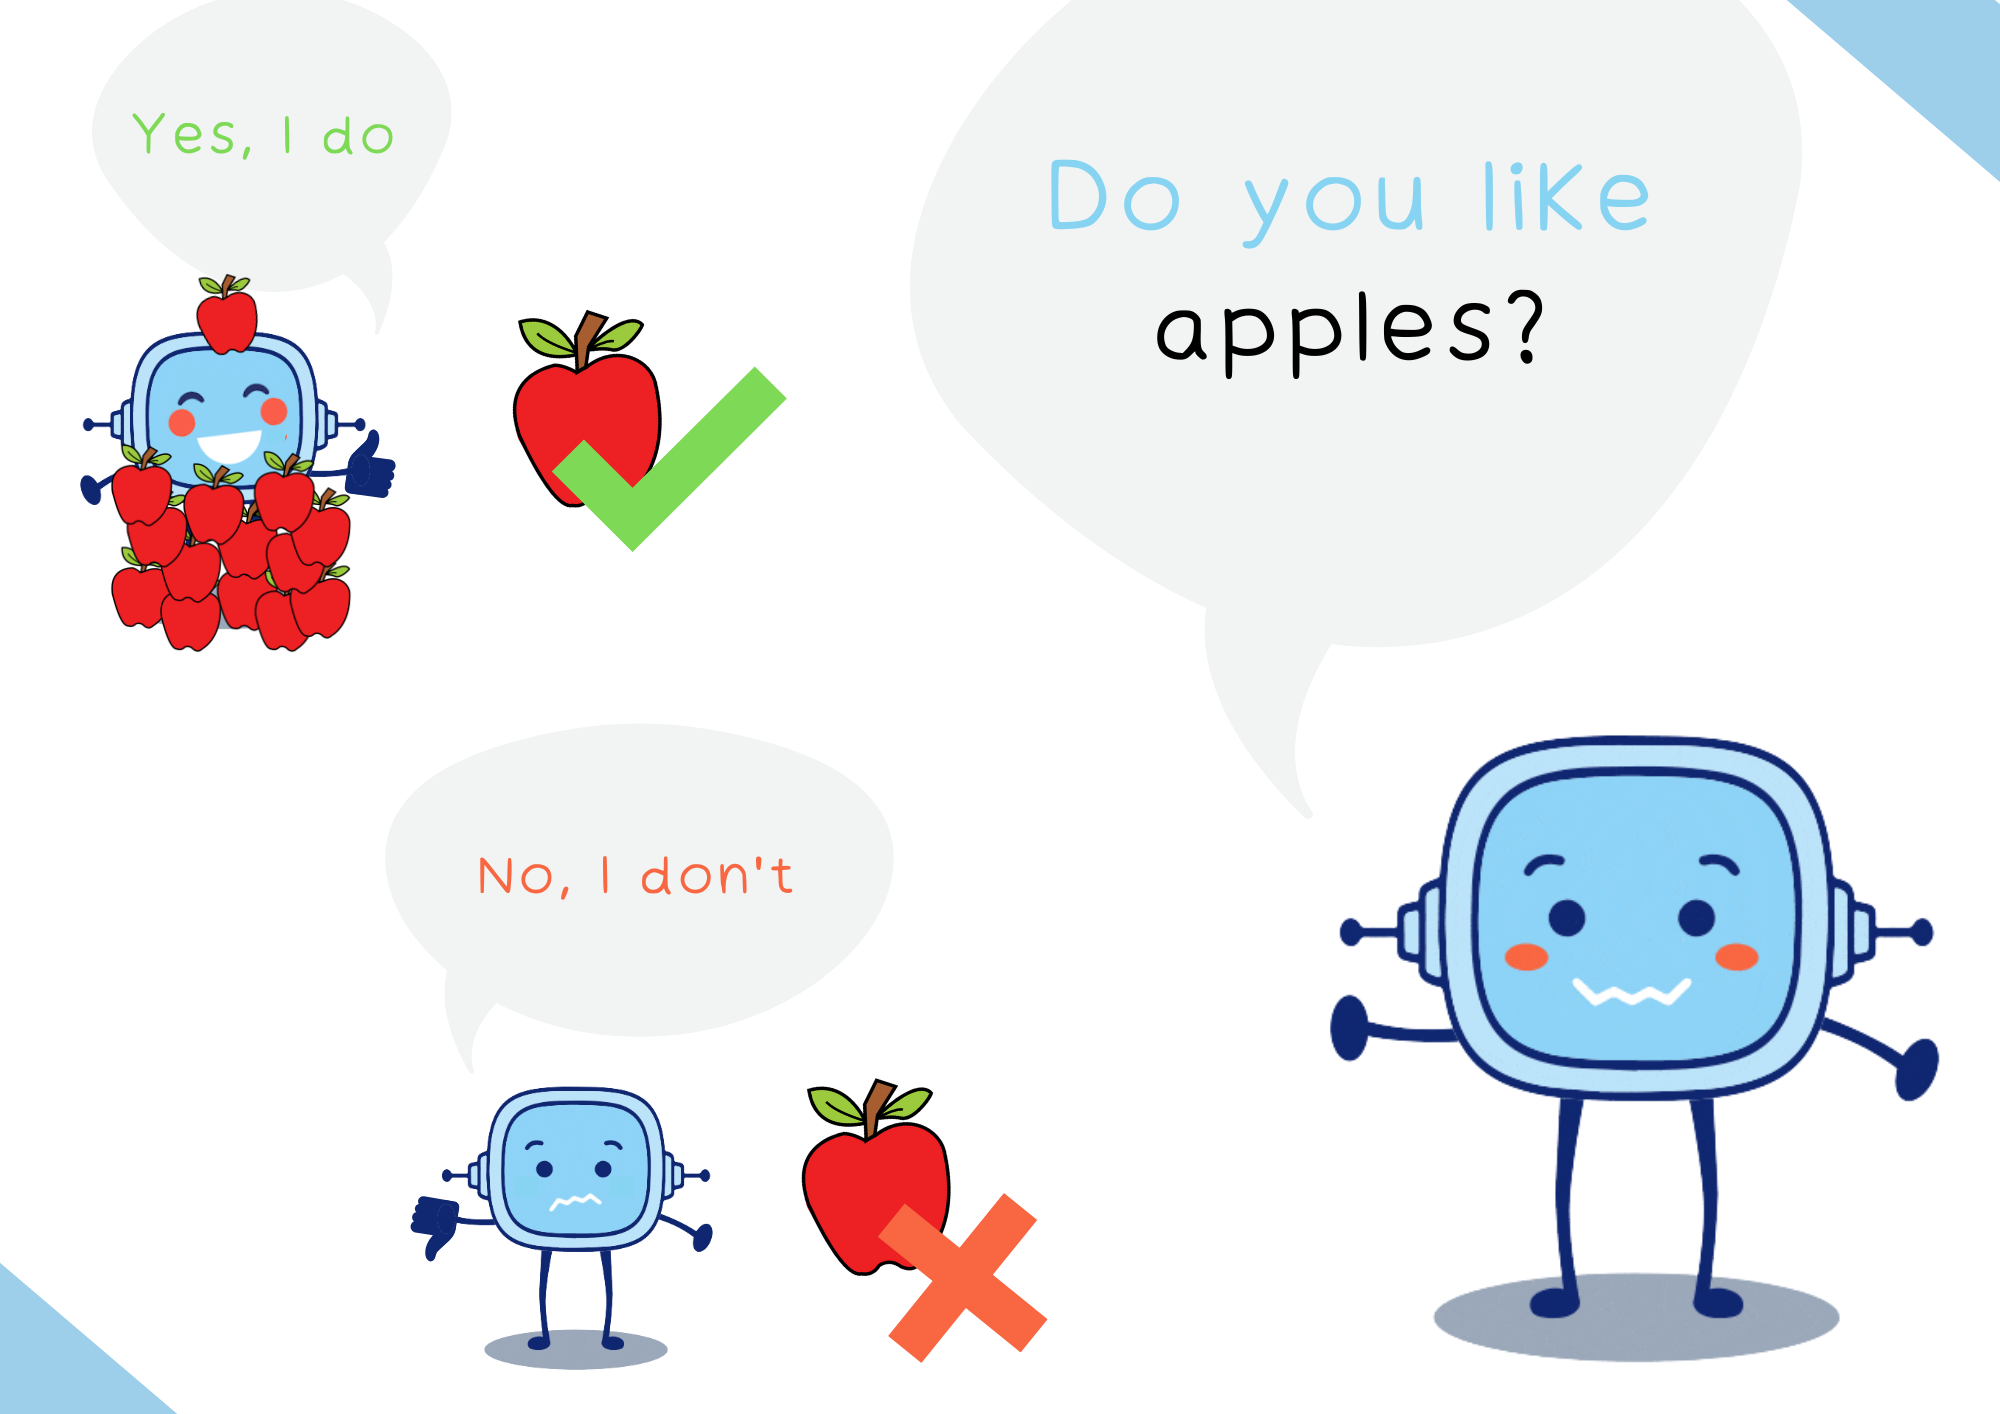 La imagen muestra a Rétor preguntando ‘Do you like apples?’ y responden otros dos Rétors, uno respondiendo ‘Yes I like’ y otro respondiendo ‘No, I don’t’. 